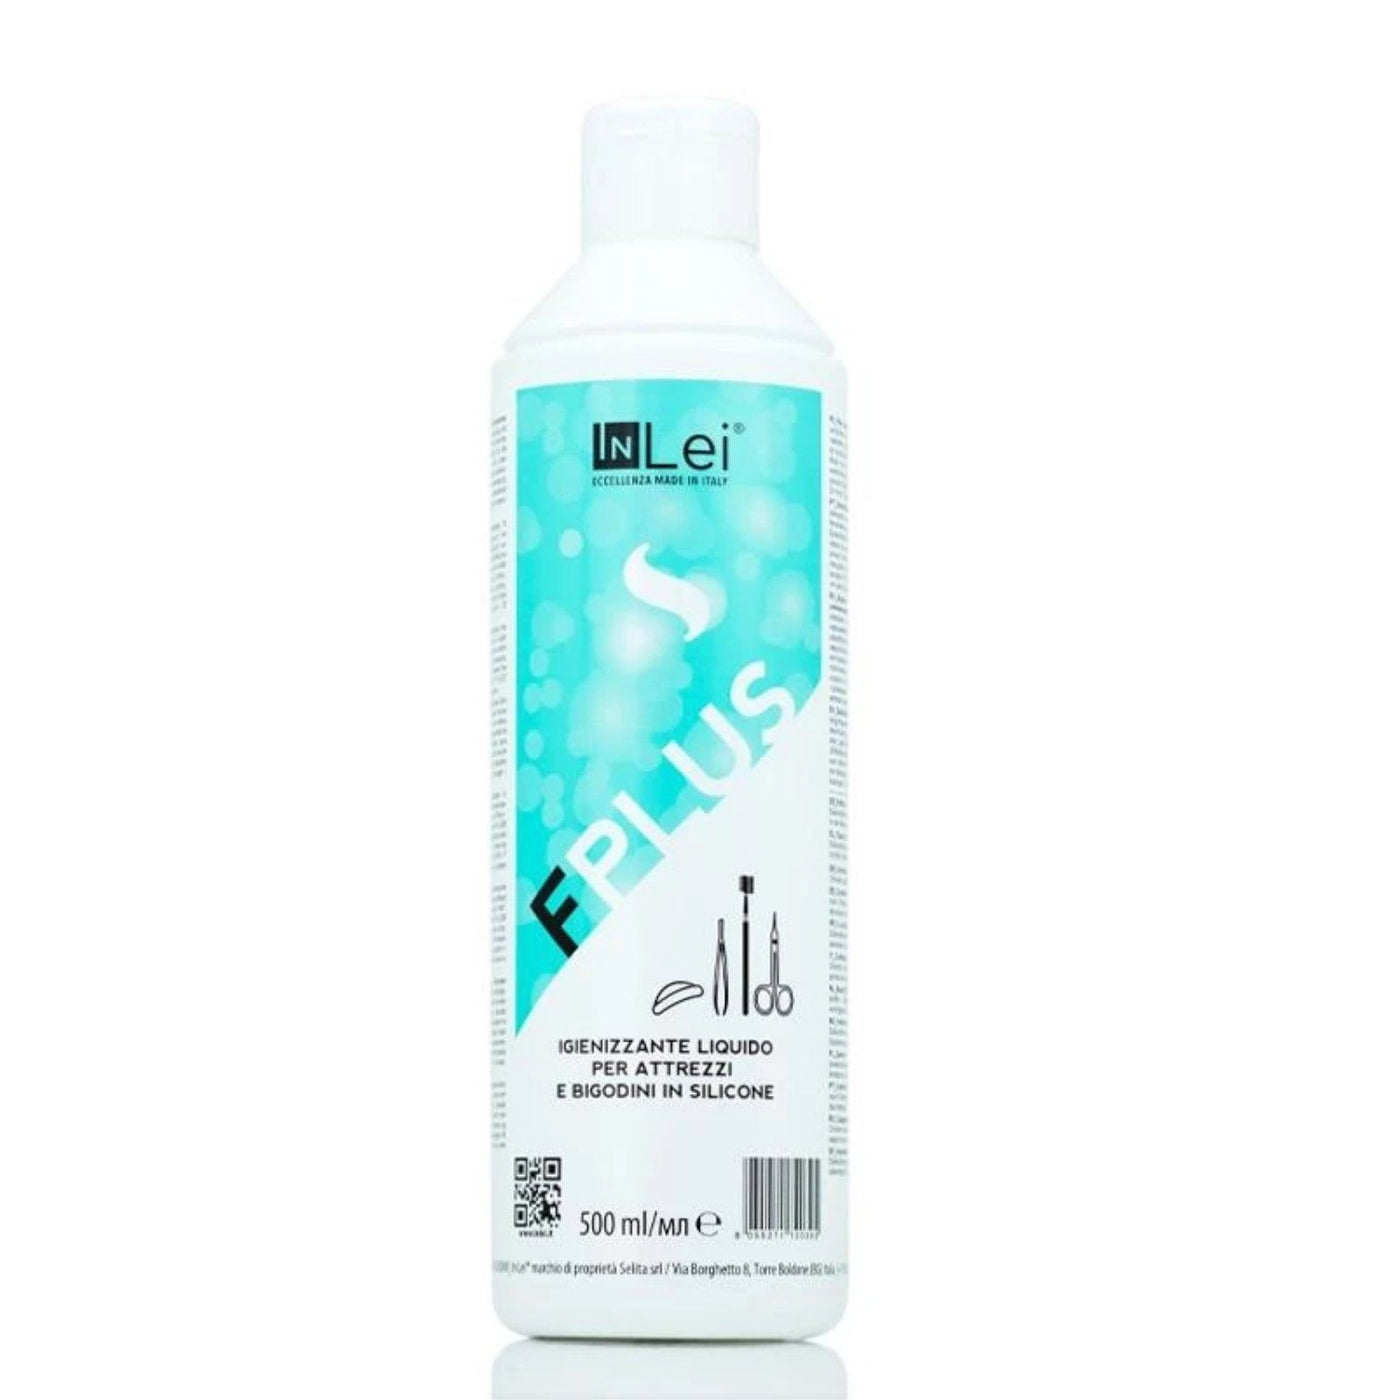 InLei “F PLUS” - Flüssiges Desinfektionsmittel für Werkzeuge und Silikonpads Desinfektion InLei 